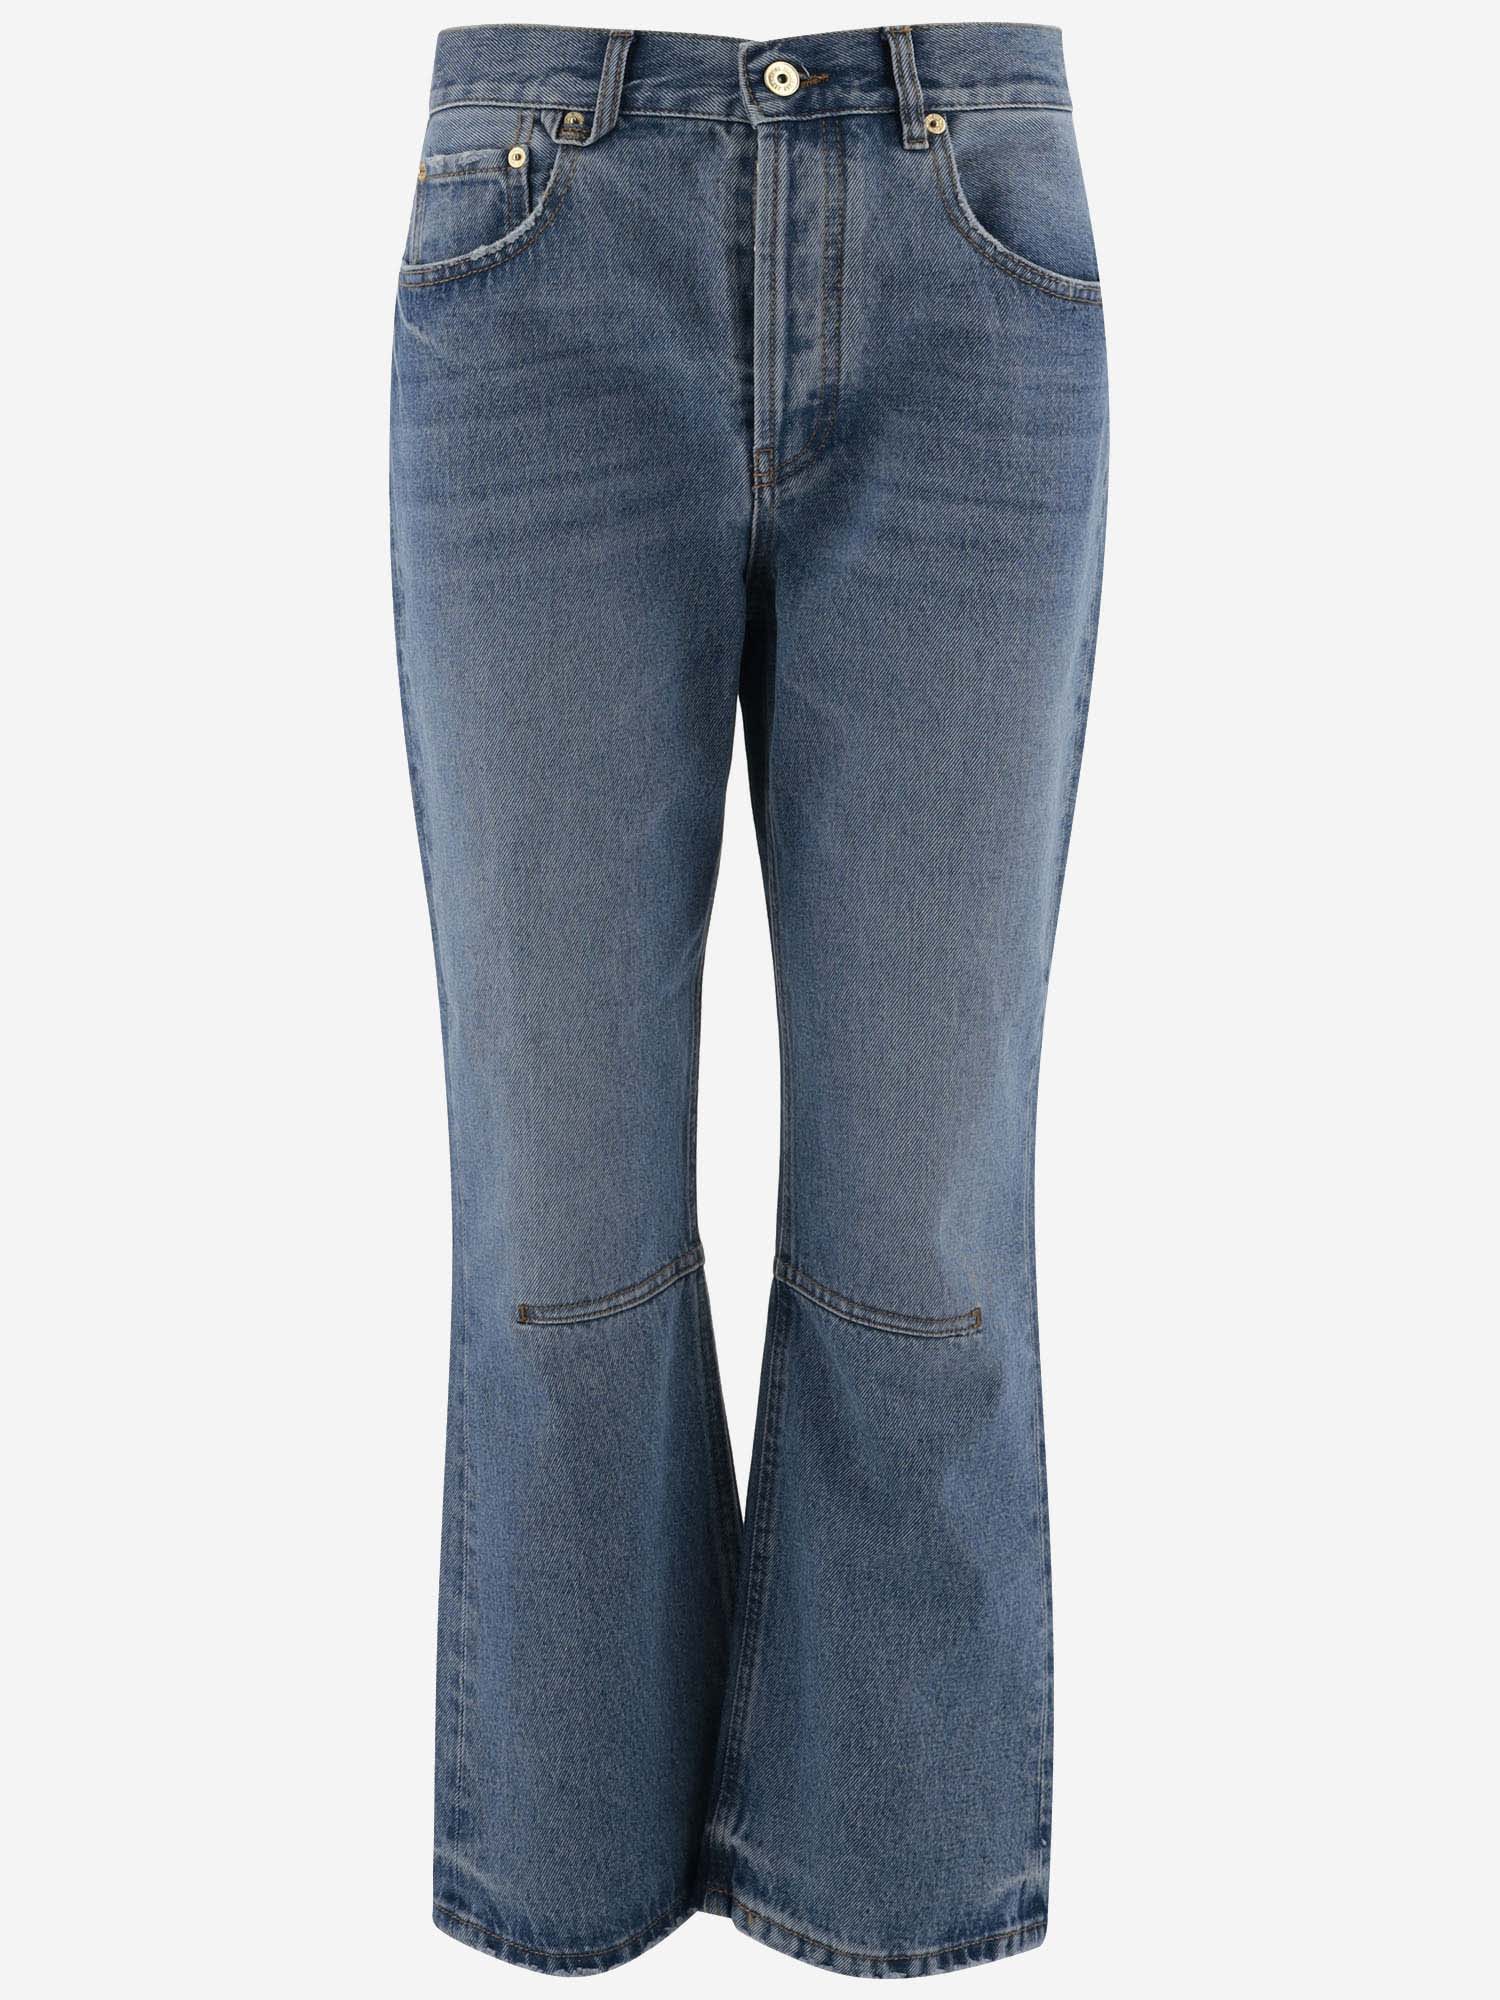 Jacquemus Cotton Denim Jeans